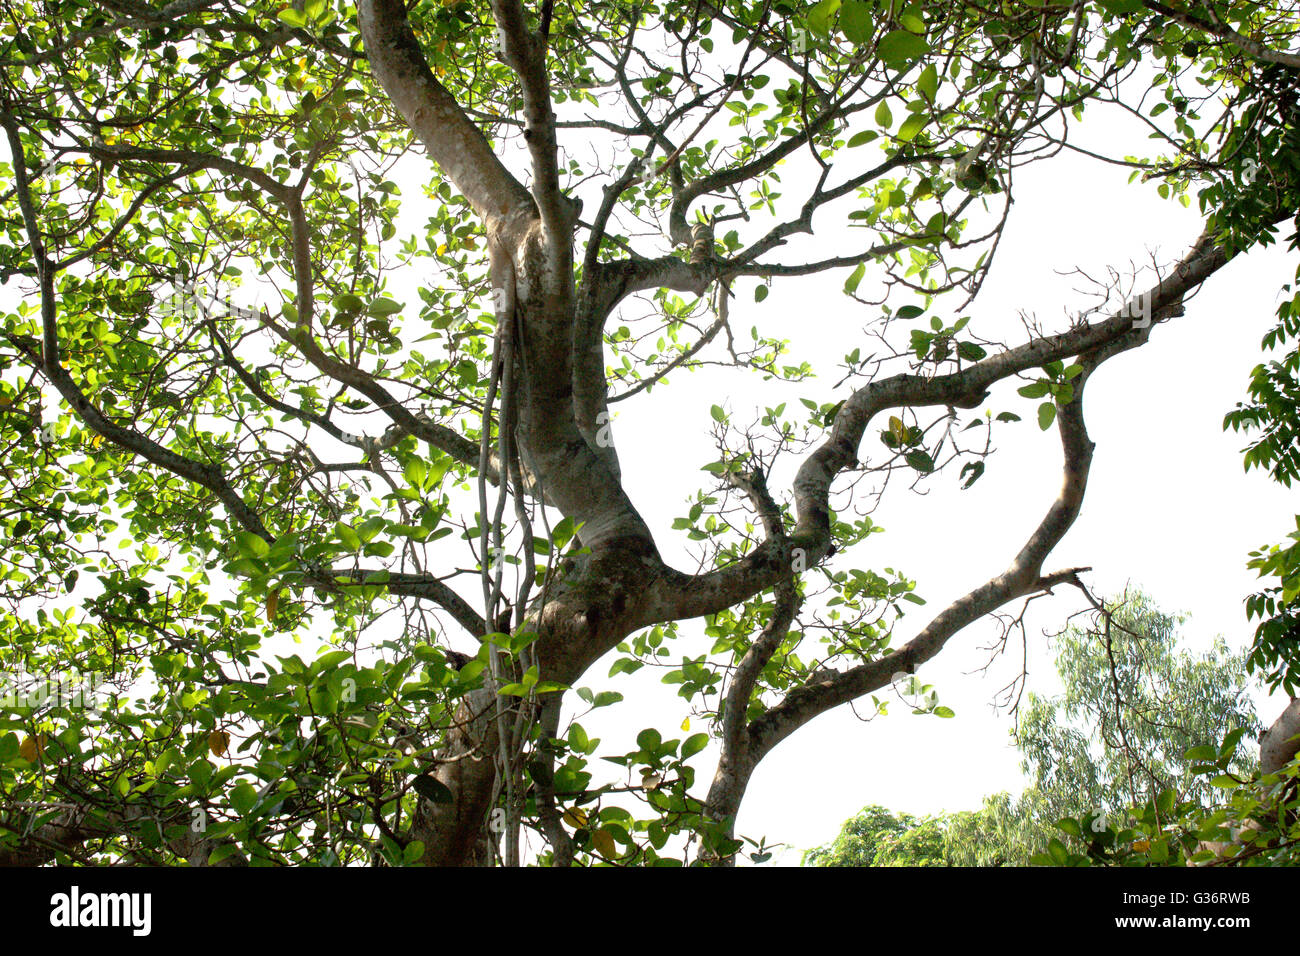 A Tree at Khulna,Bangladesh. Stock Photo